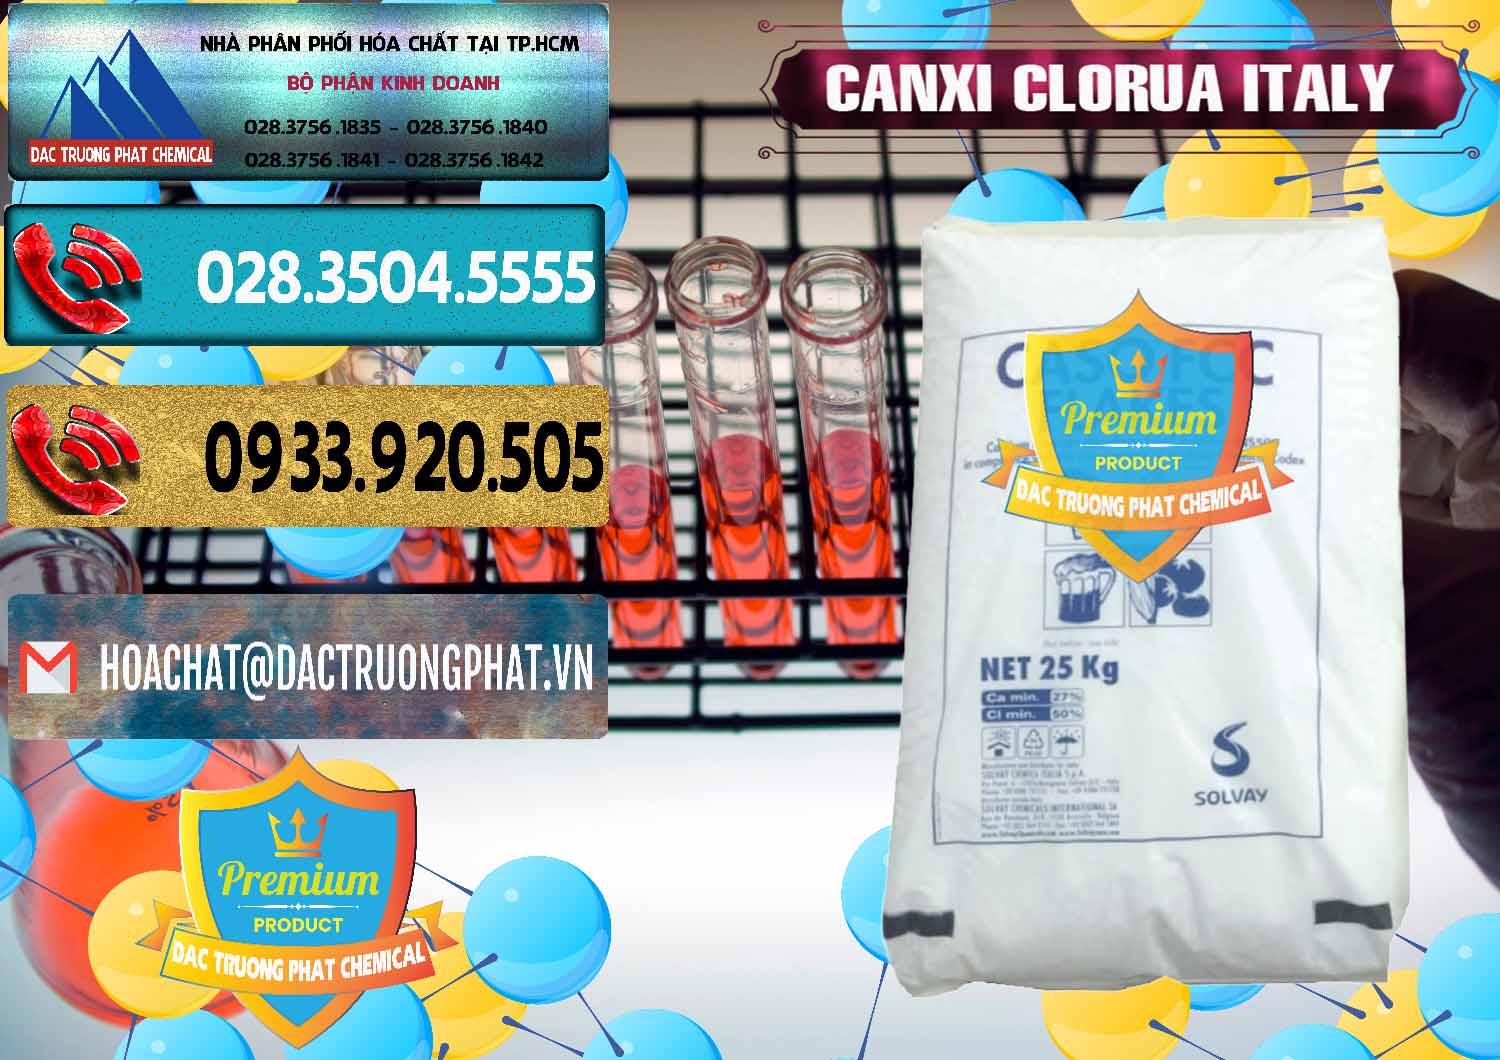 Đơn vị chuyên bán và cung ứng CaCl2 – Canxi Clorua Food Grade Ý Italy - 0435 - Cty cung cấp - kinh doanh hóa chất tại TP.HCM - hoachatdetnhuom.com